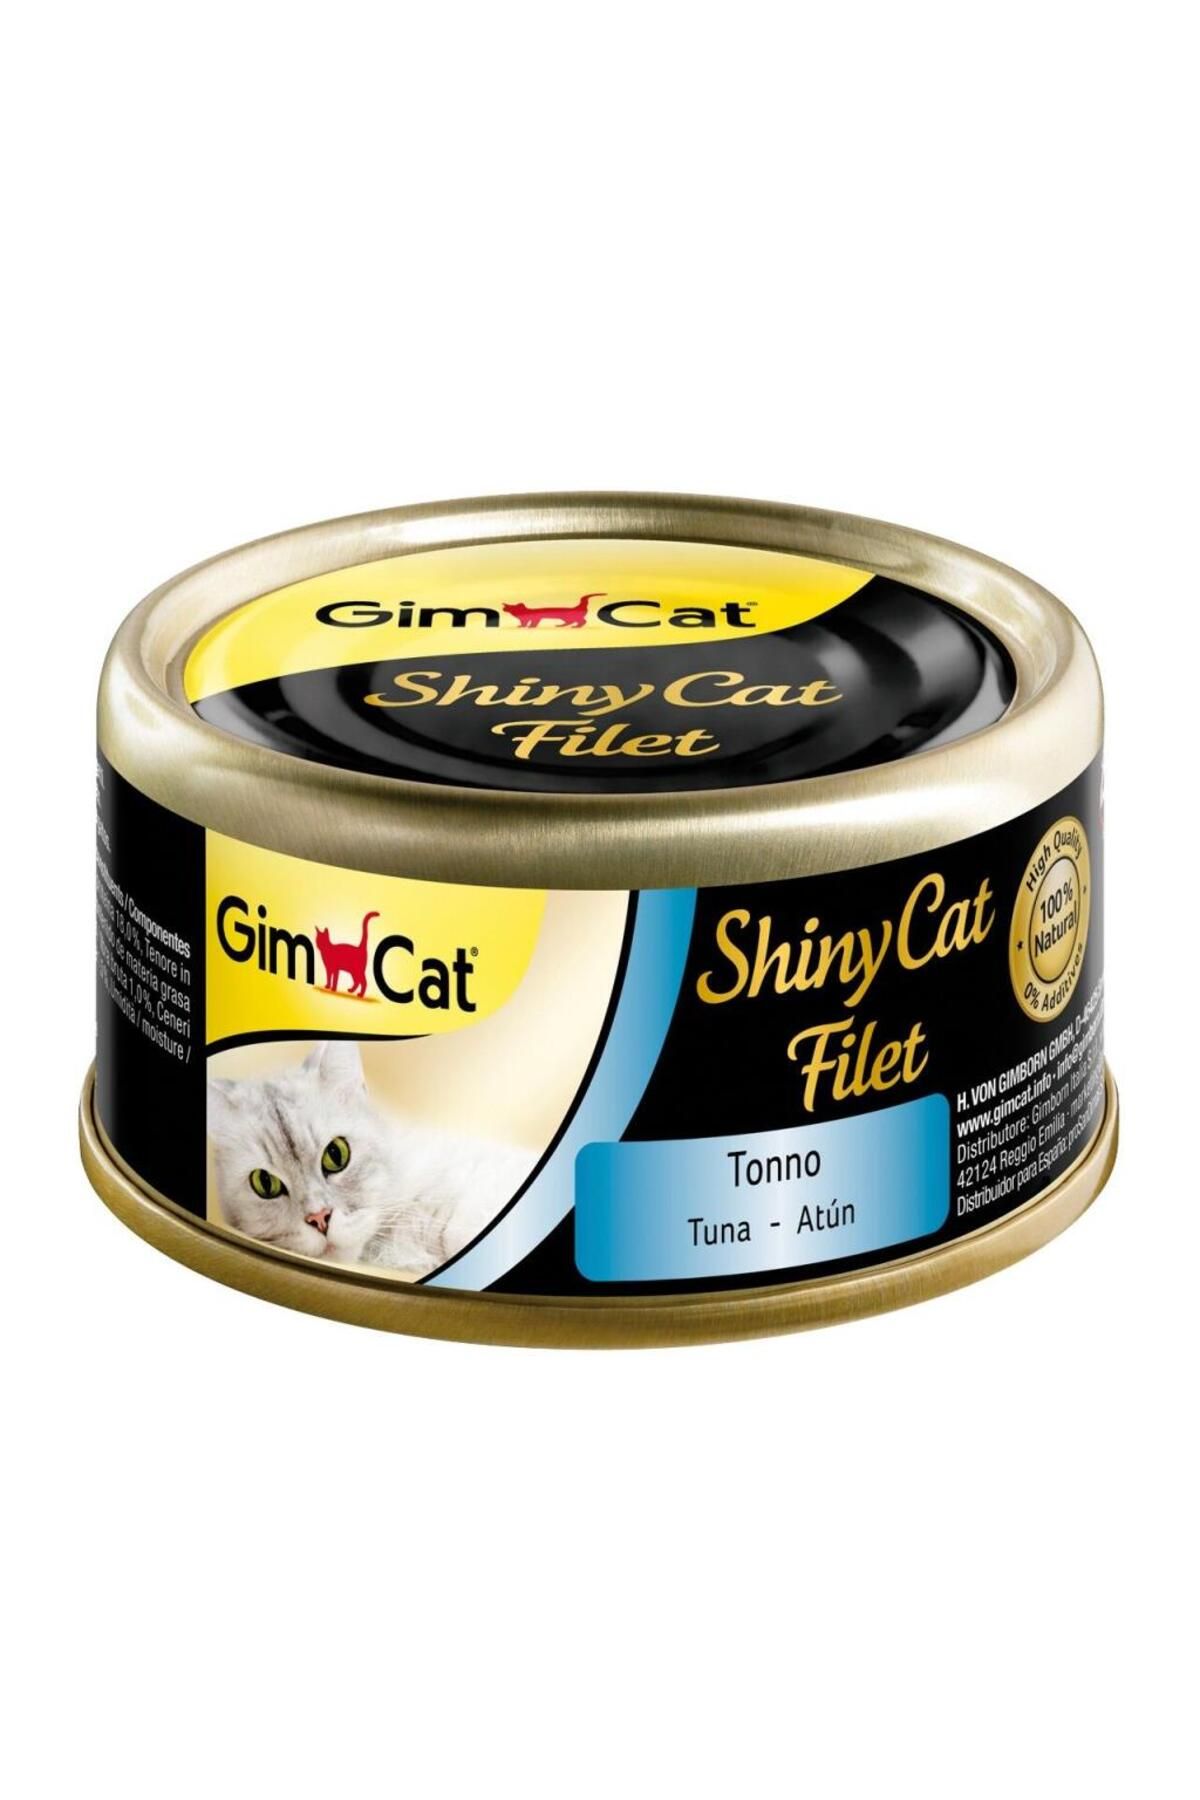 Gimcat Shinycat Kıyılmış Fileto Tuna Balıklı Yetişkin Konserve Kedi Maması 70 gr